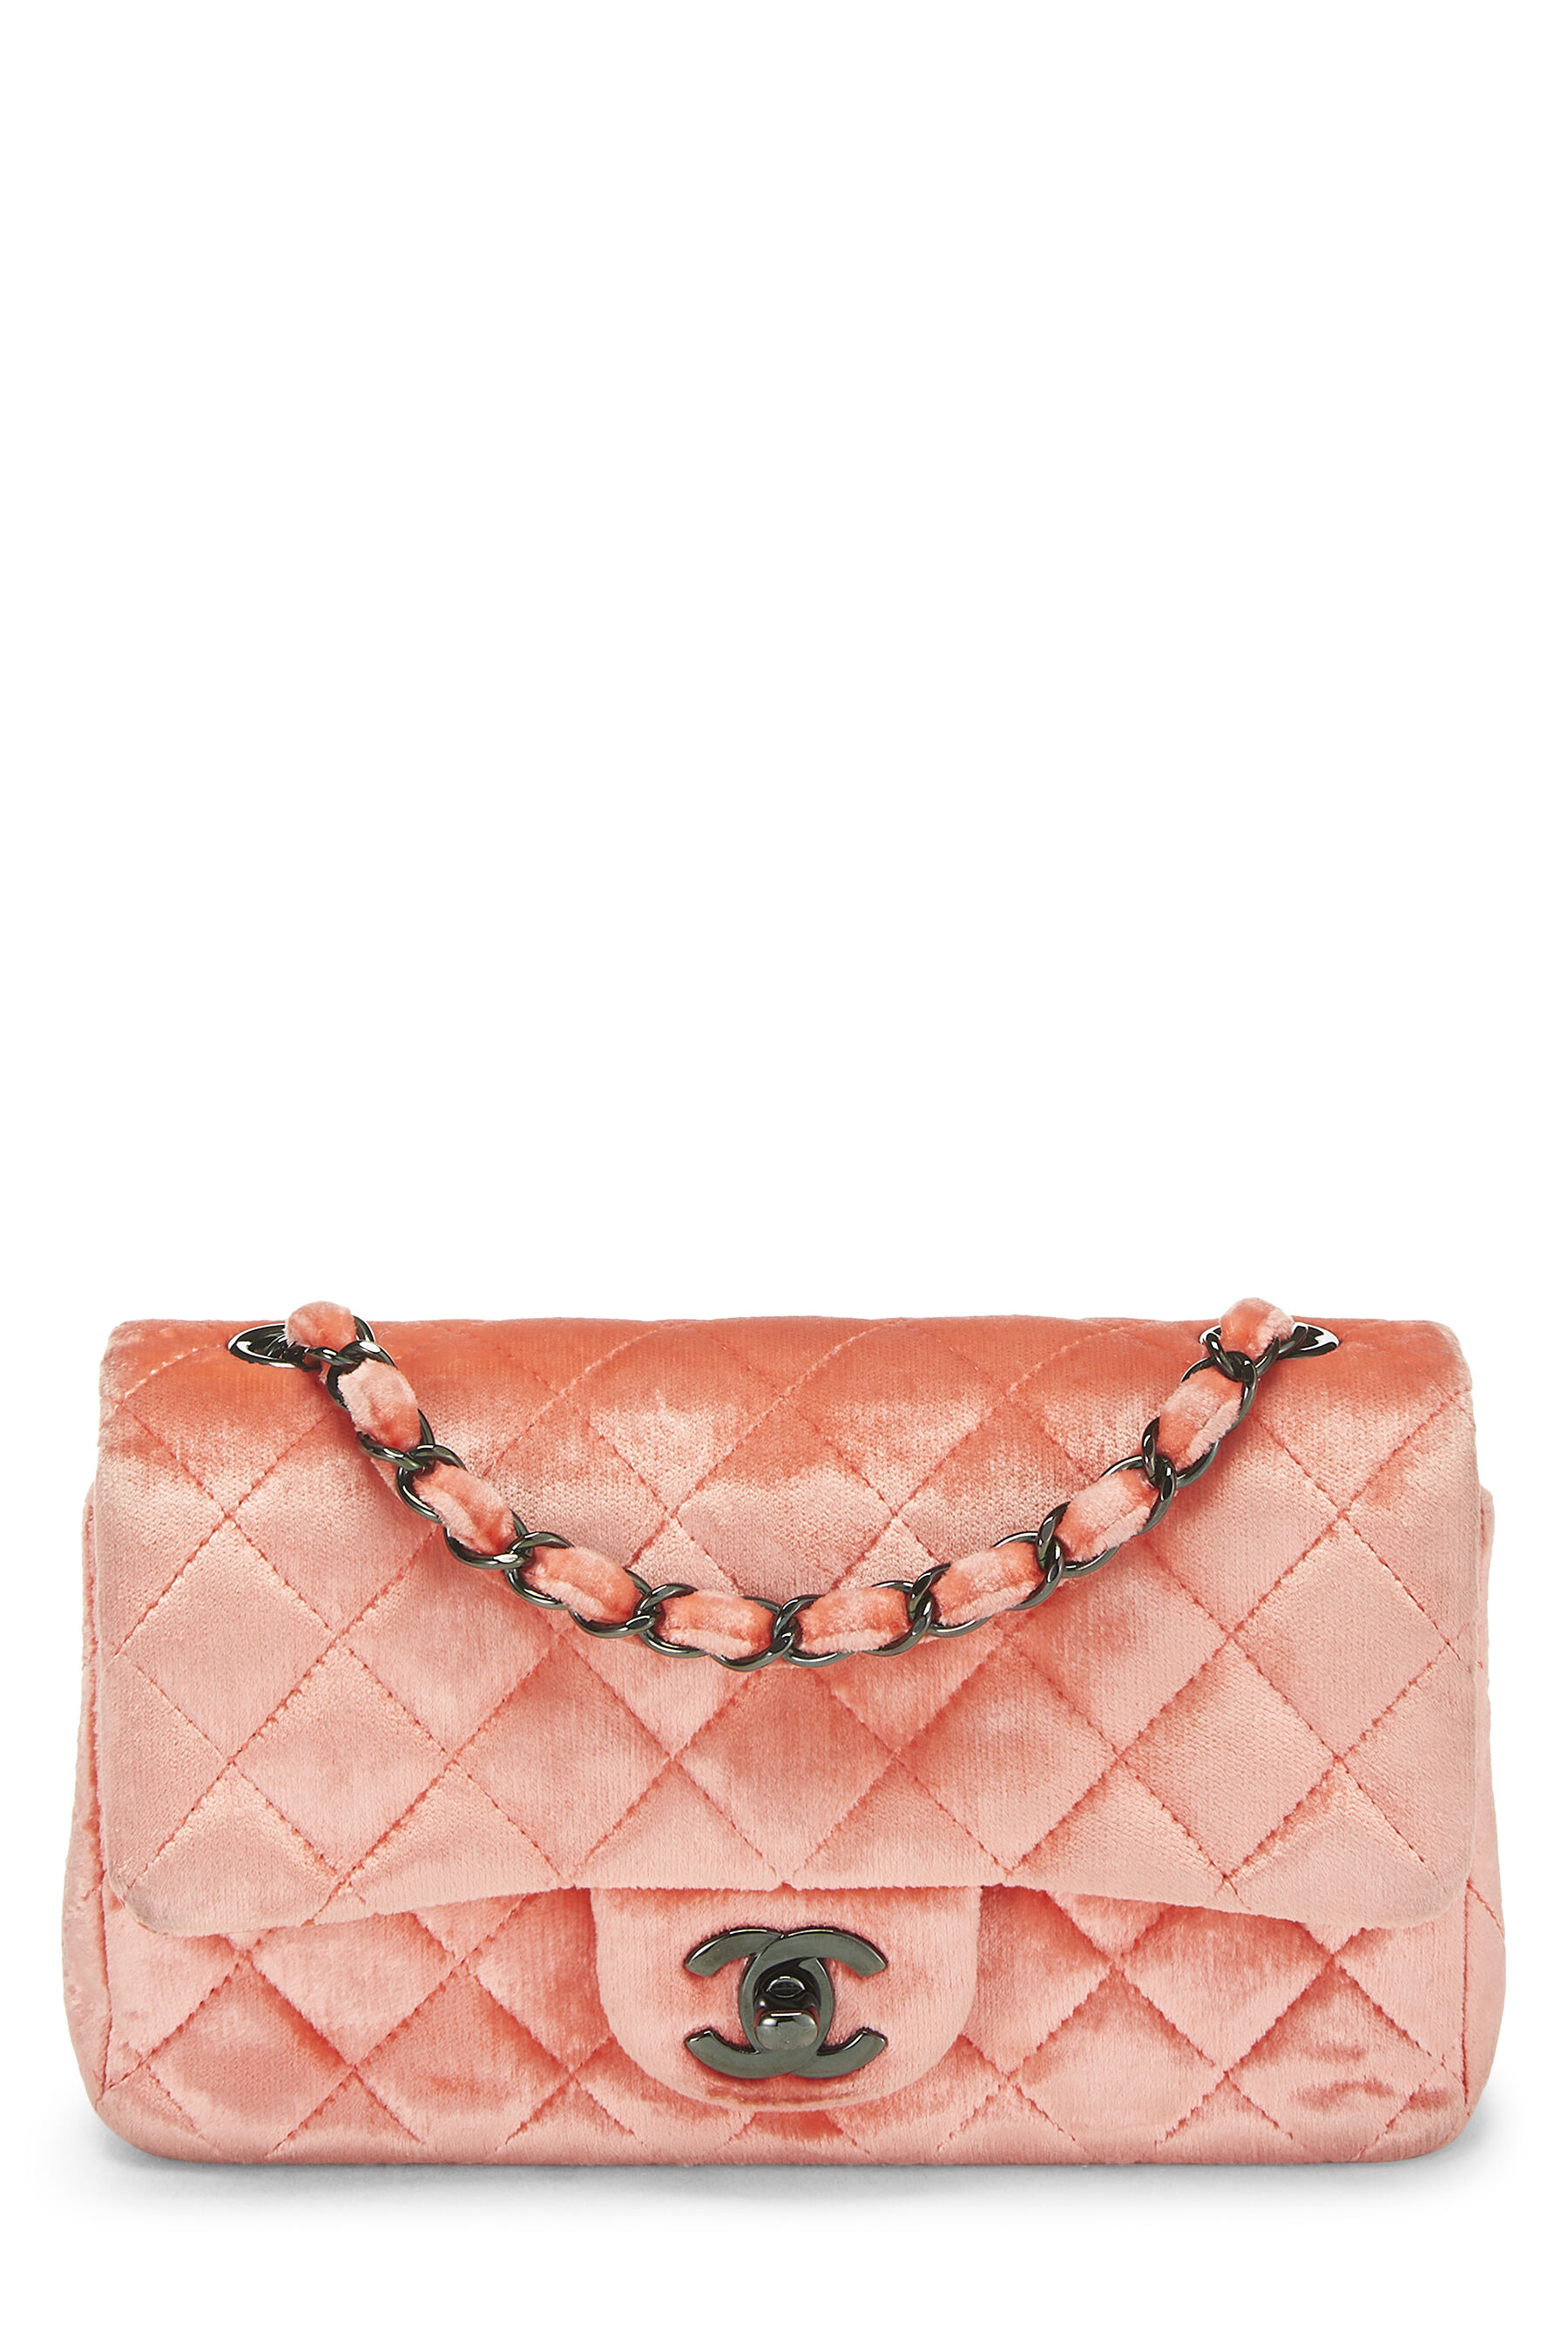 Chanel Pre-Loved 2015 Classic CC Velvet Flap Bag Orange